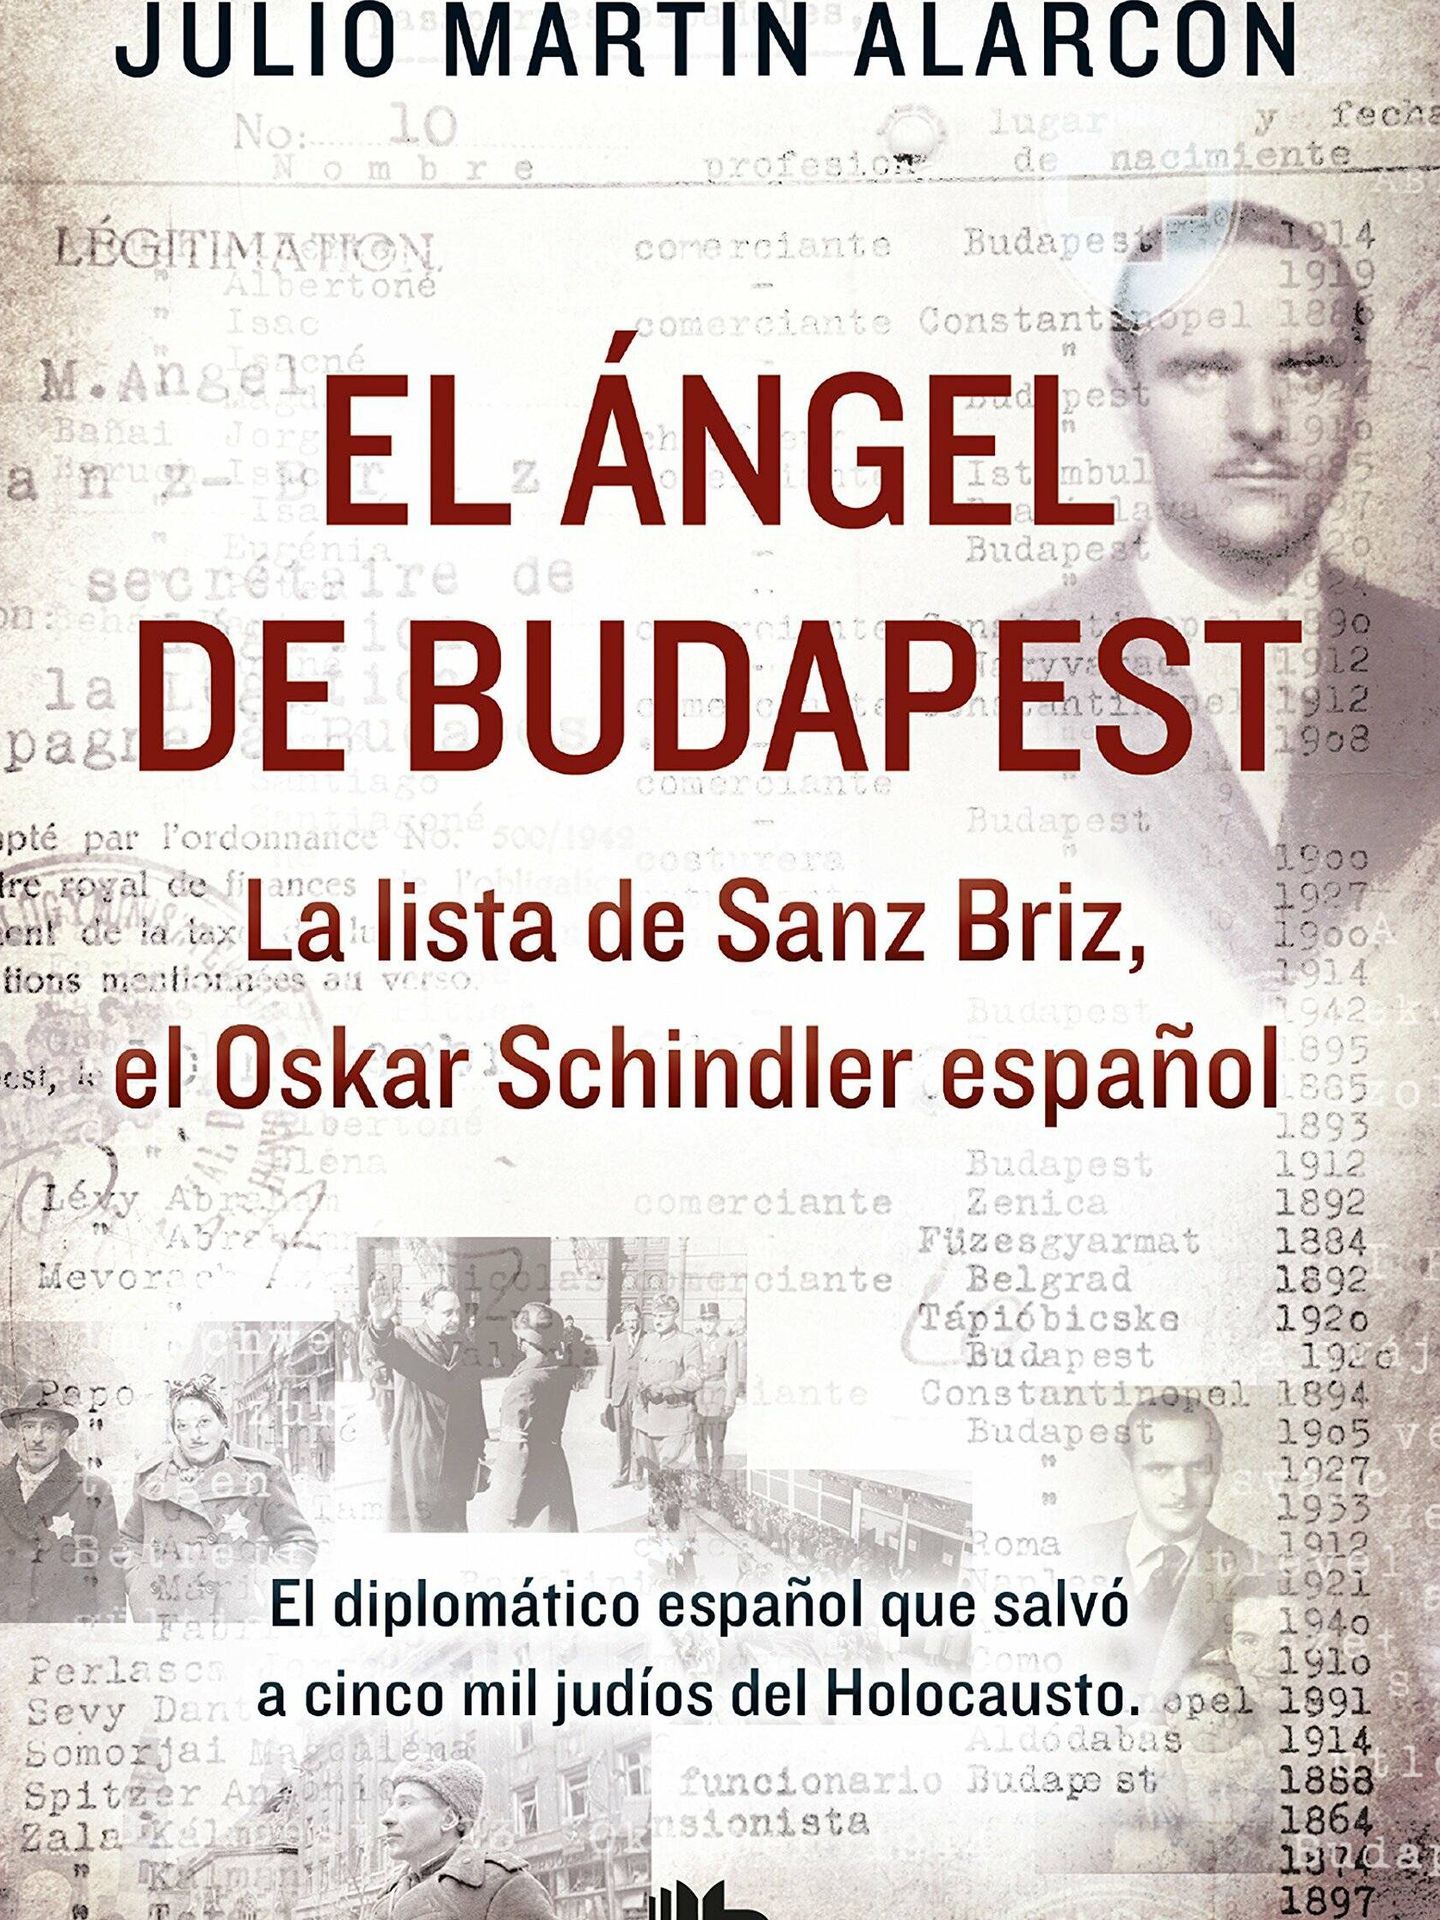 Portada del libro 'El Ángel de Budapest', escrito por Julio Martín Alarcón. (Ediciones B)